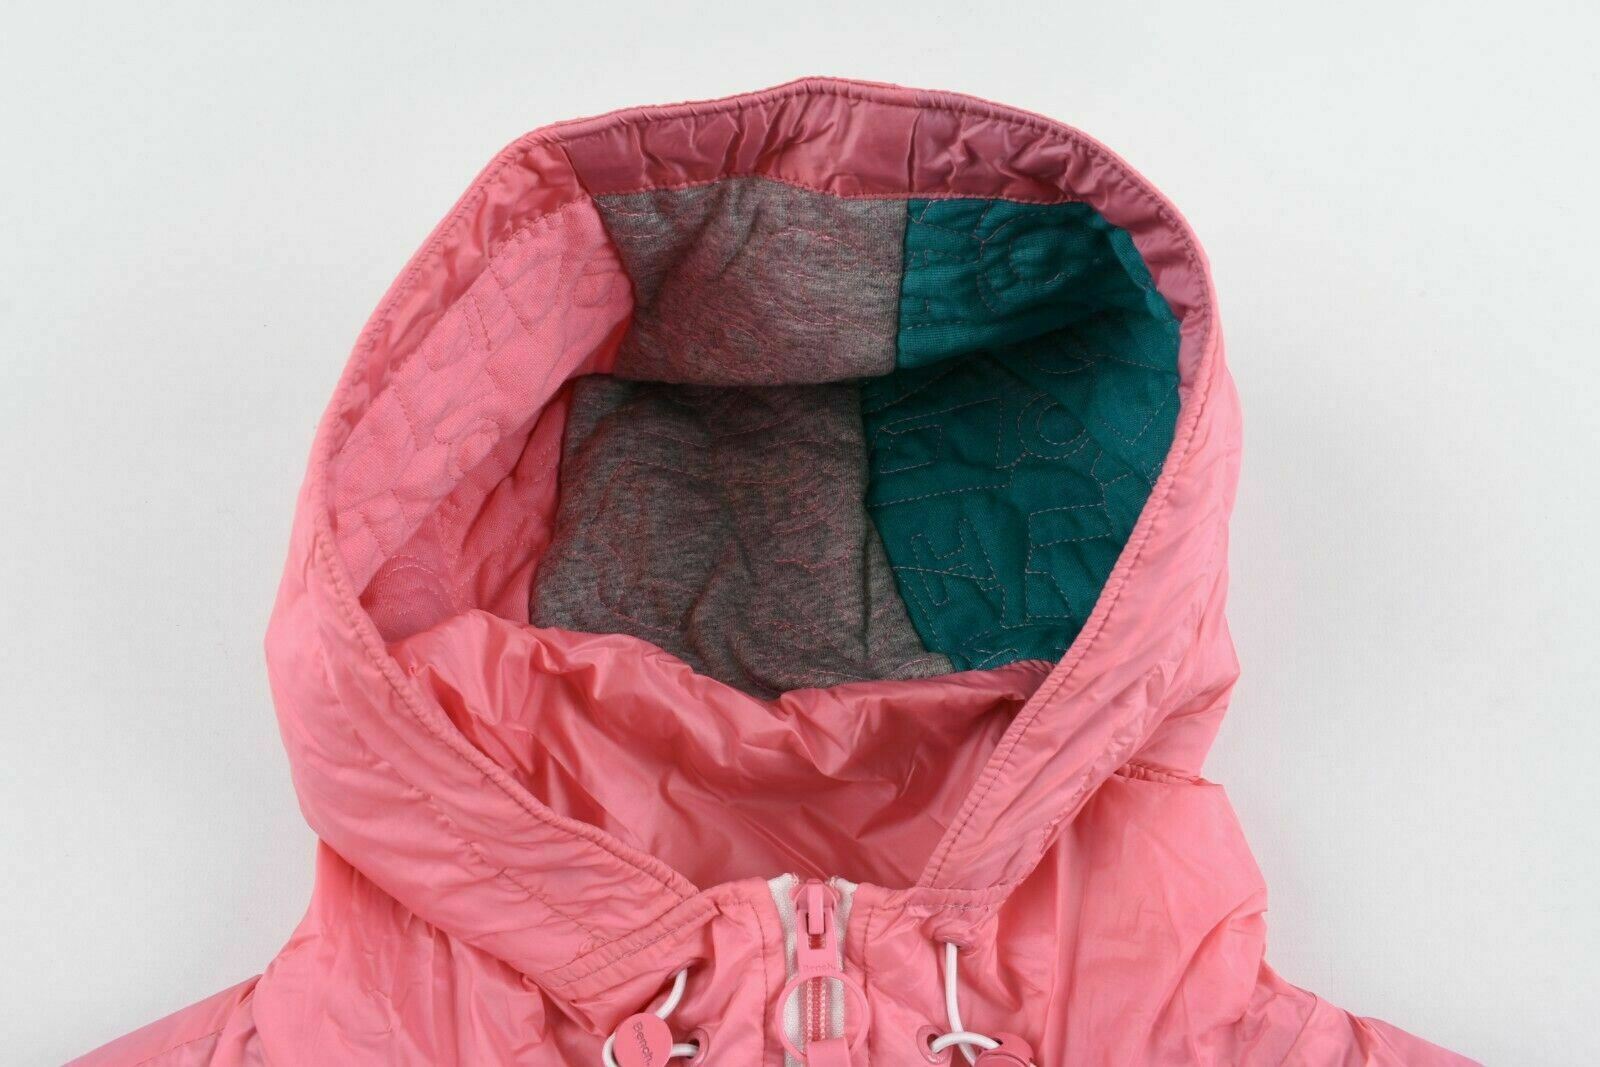 BENCH Women's Pink Hooded Windbreaker Jacket, size SMALL